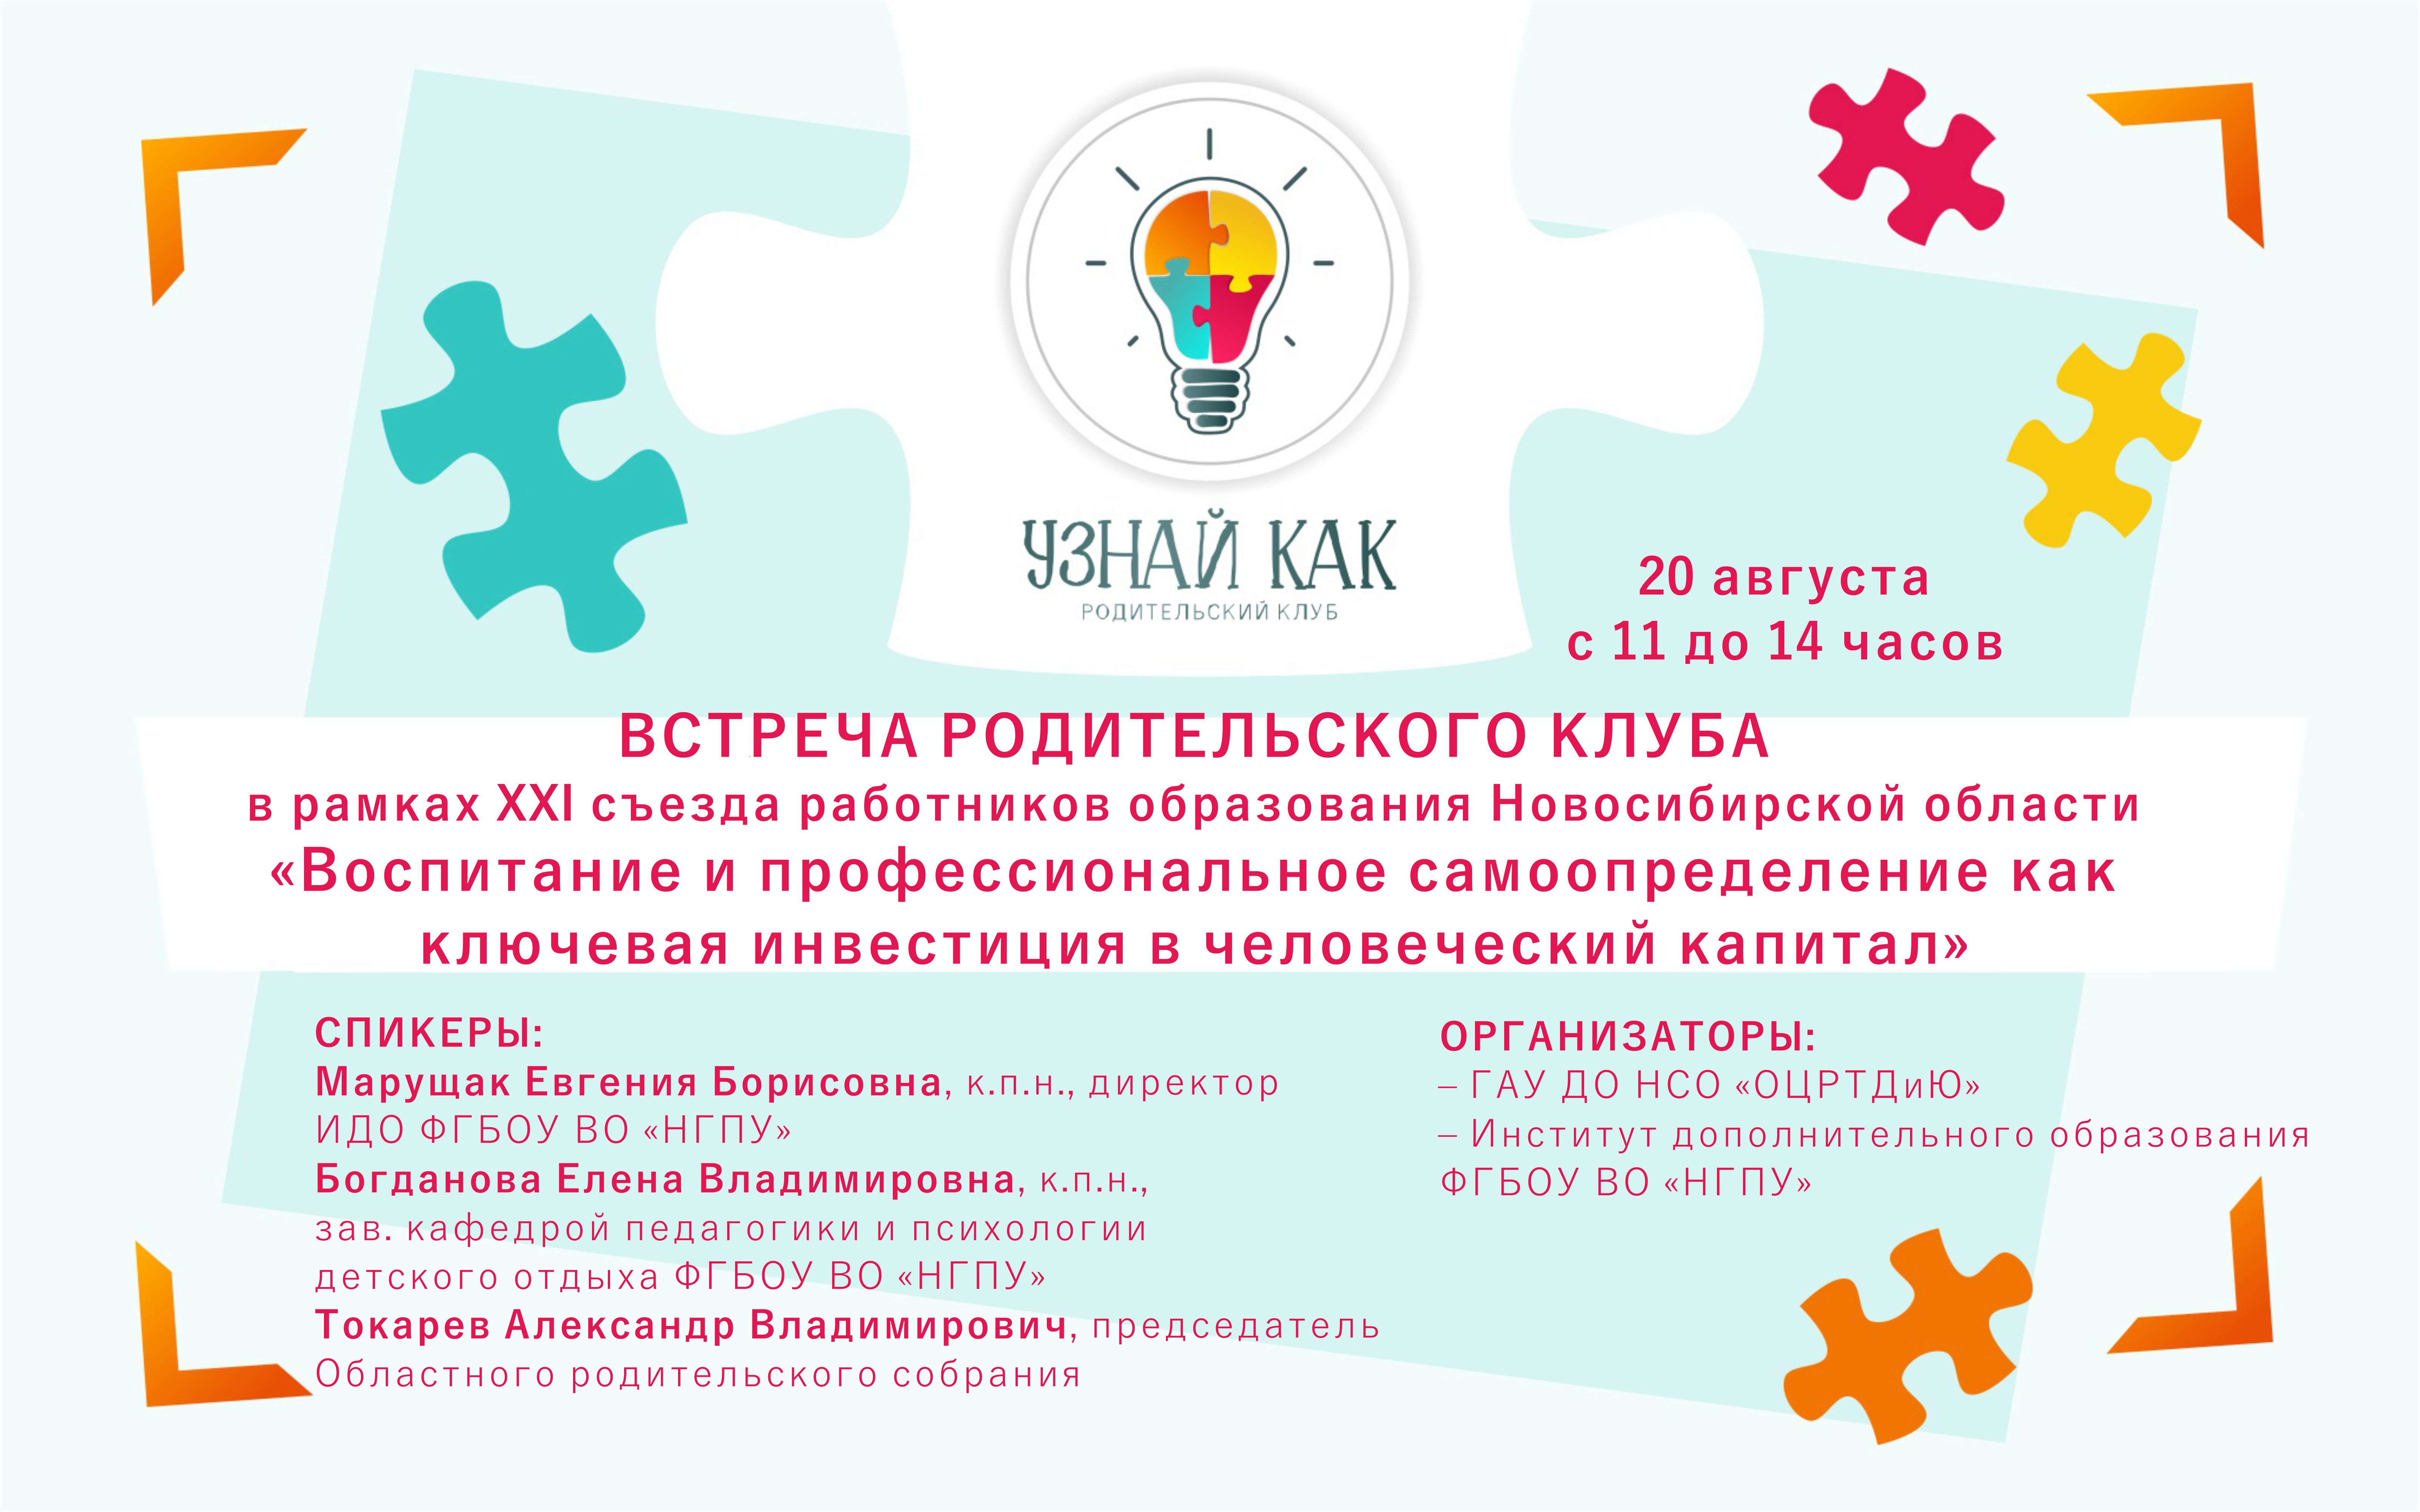 Встреча родительского клуба «Узнай как» в рамках XXI съезда работников образования Новосибирской области